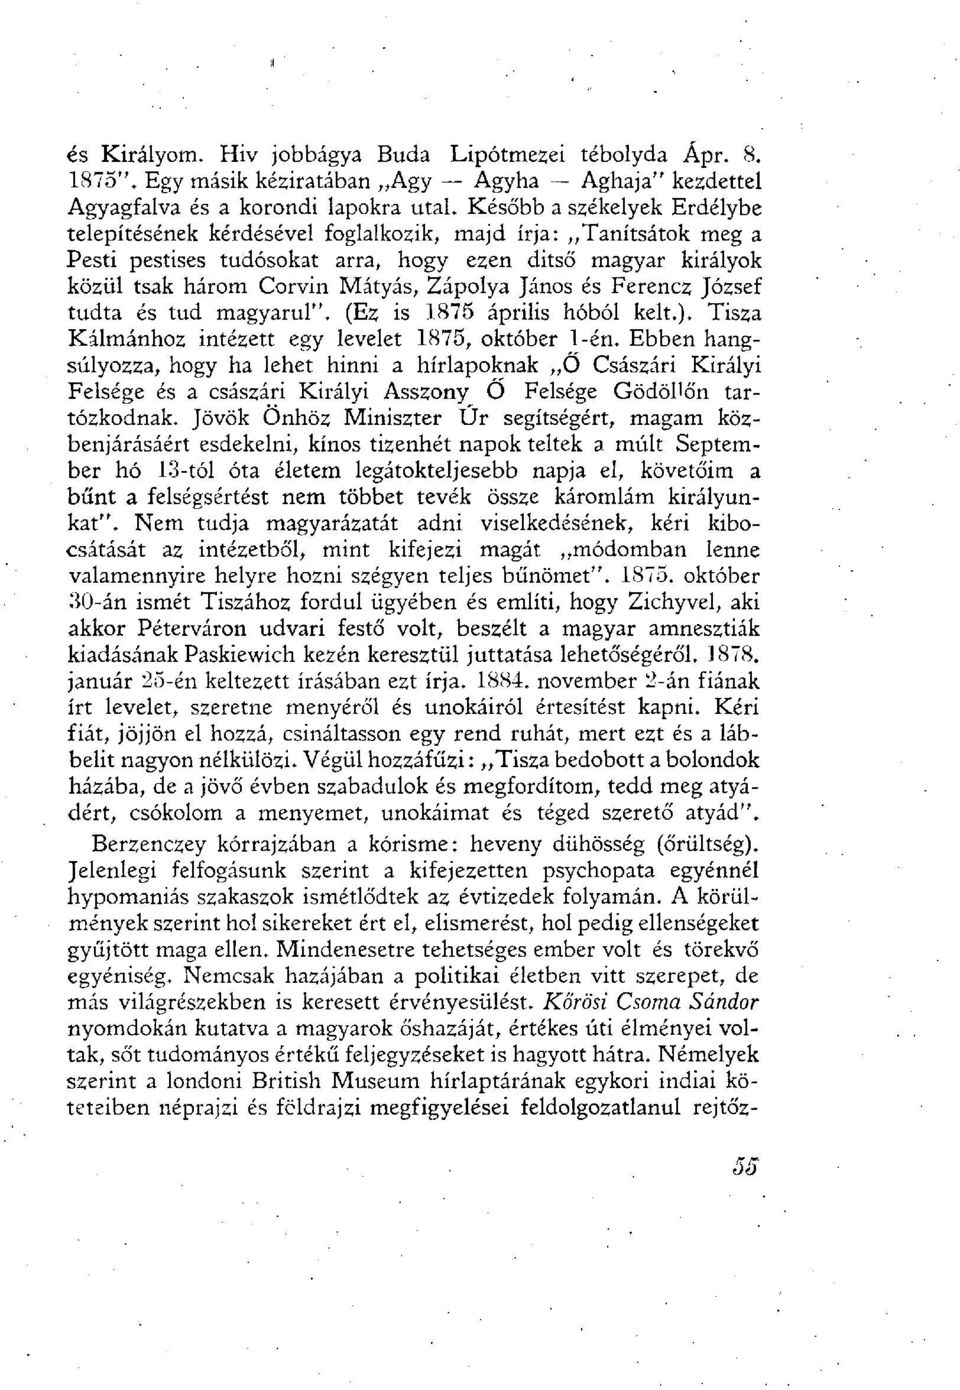 János és Ferencz József tudta és tud magyarul". (Ez is 1875 április hóból kelt.). Tisza Kálmánhoz intézett egy levelet 1875, október 1-én.